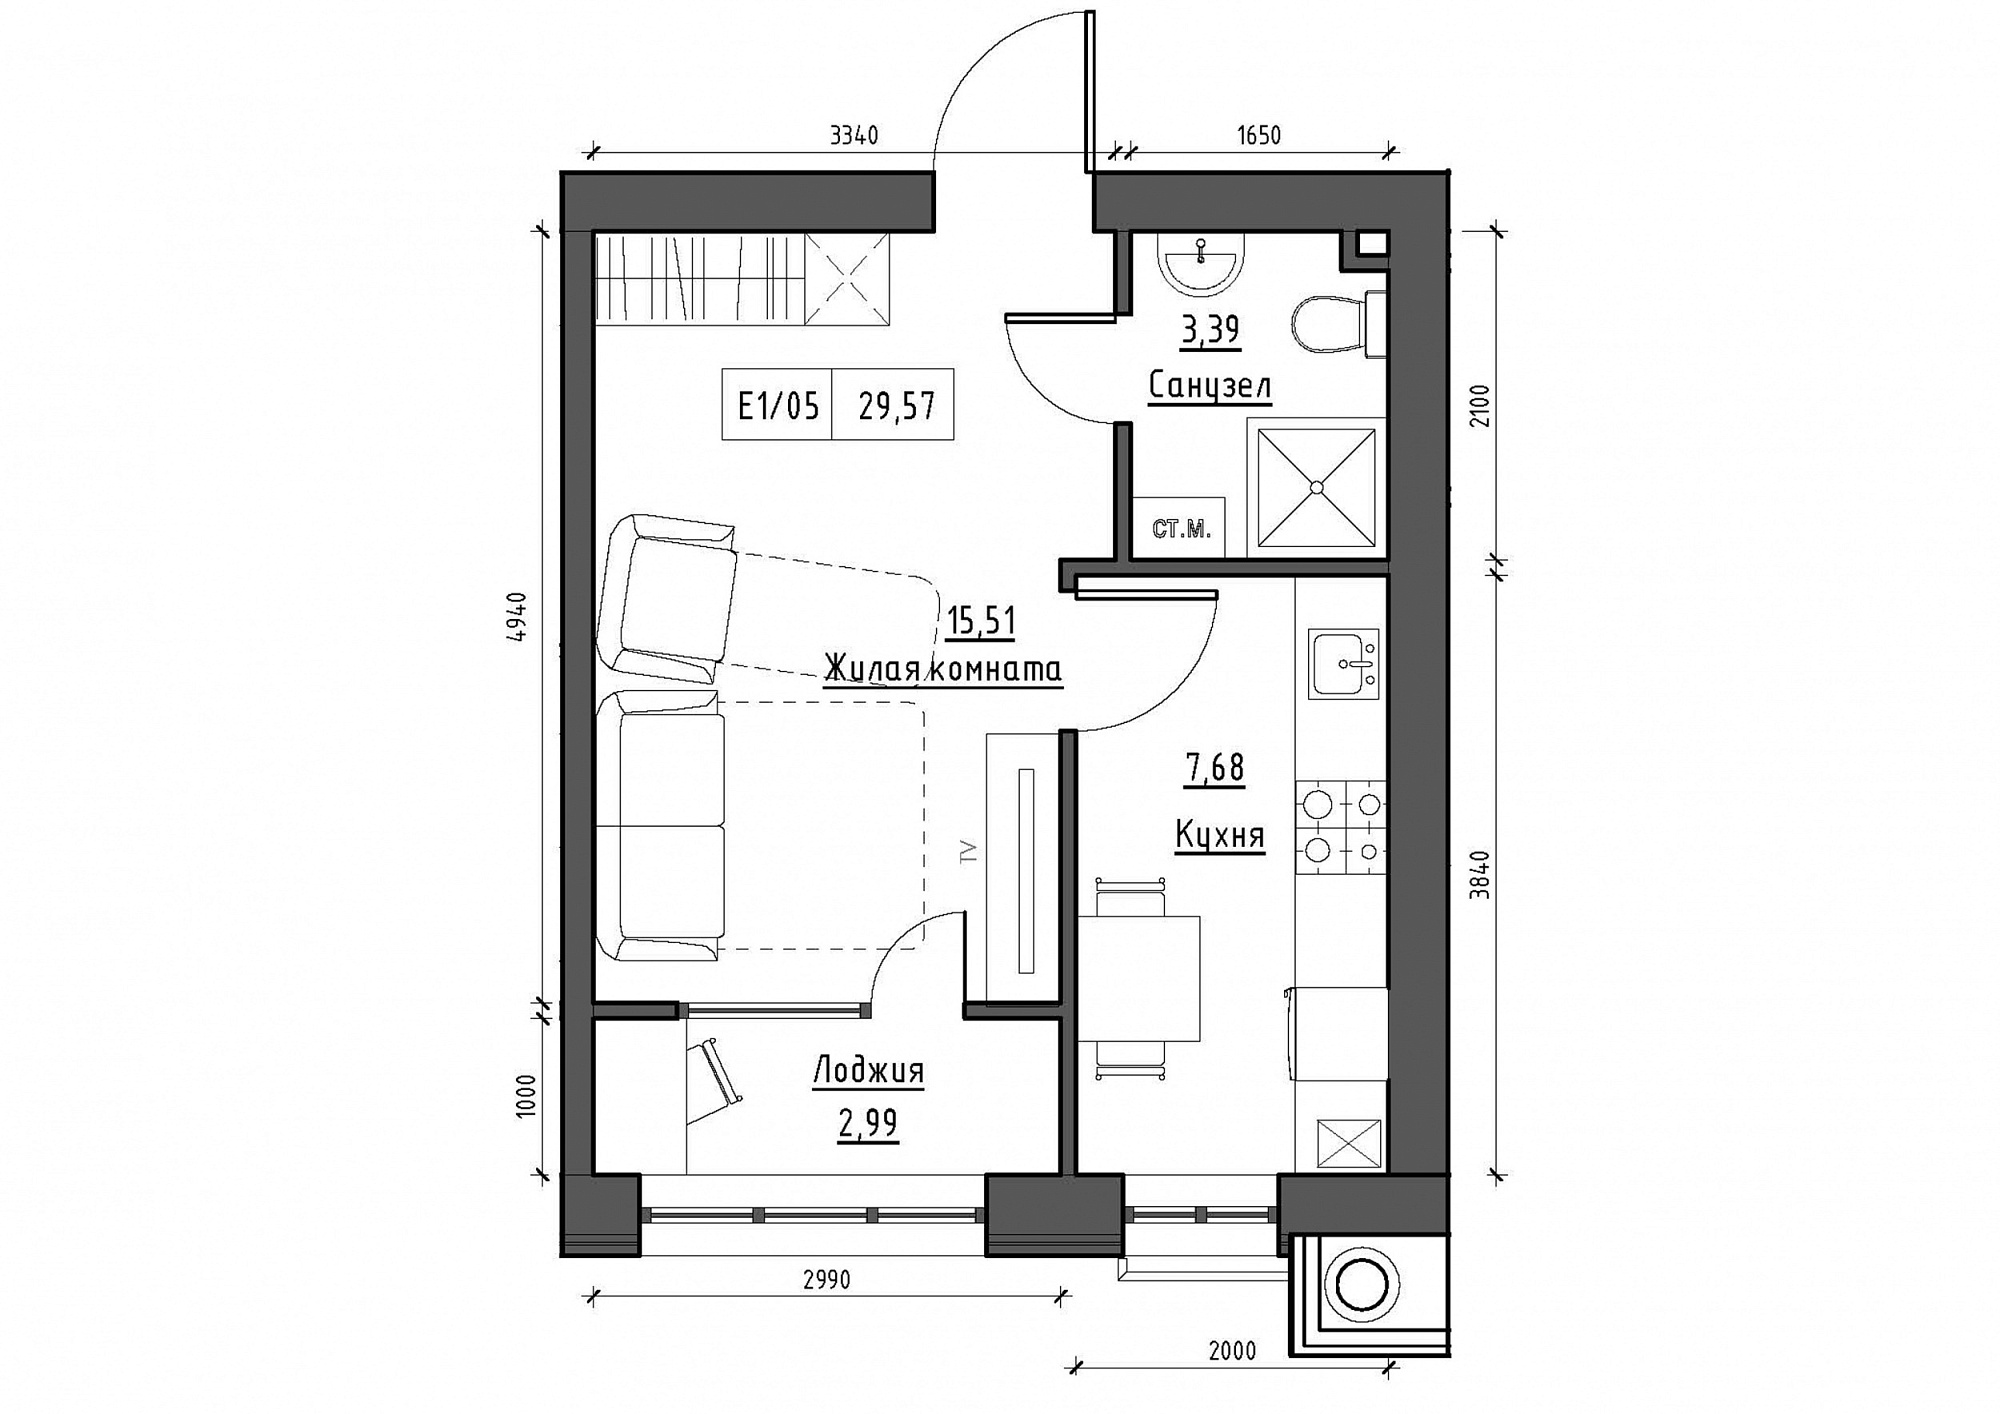 Планування 1-к квартира площею 29.57м2, KS-012-02/0006.